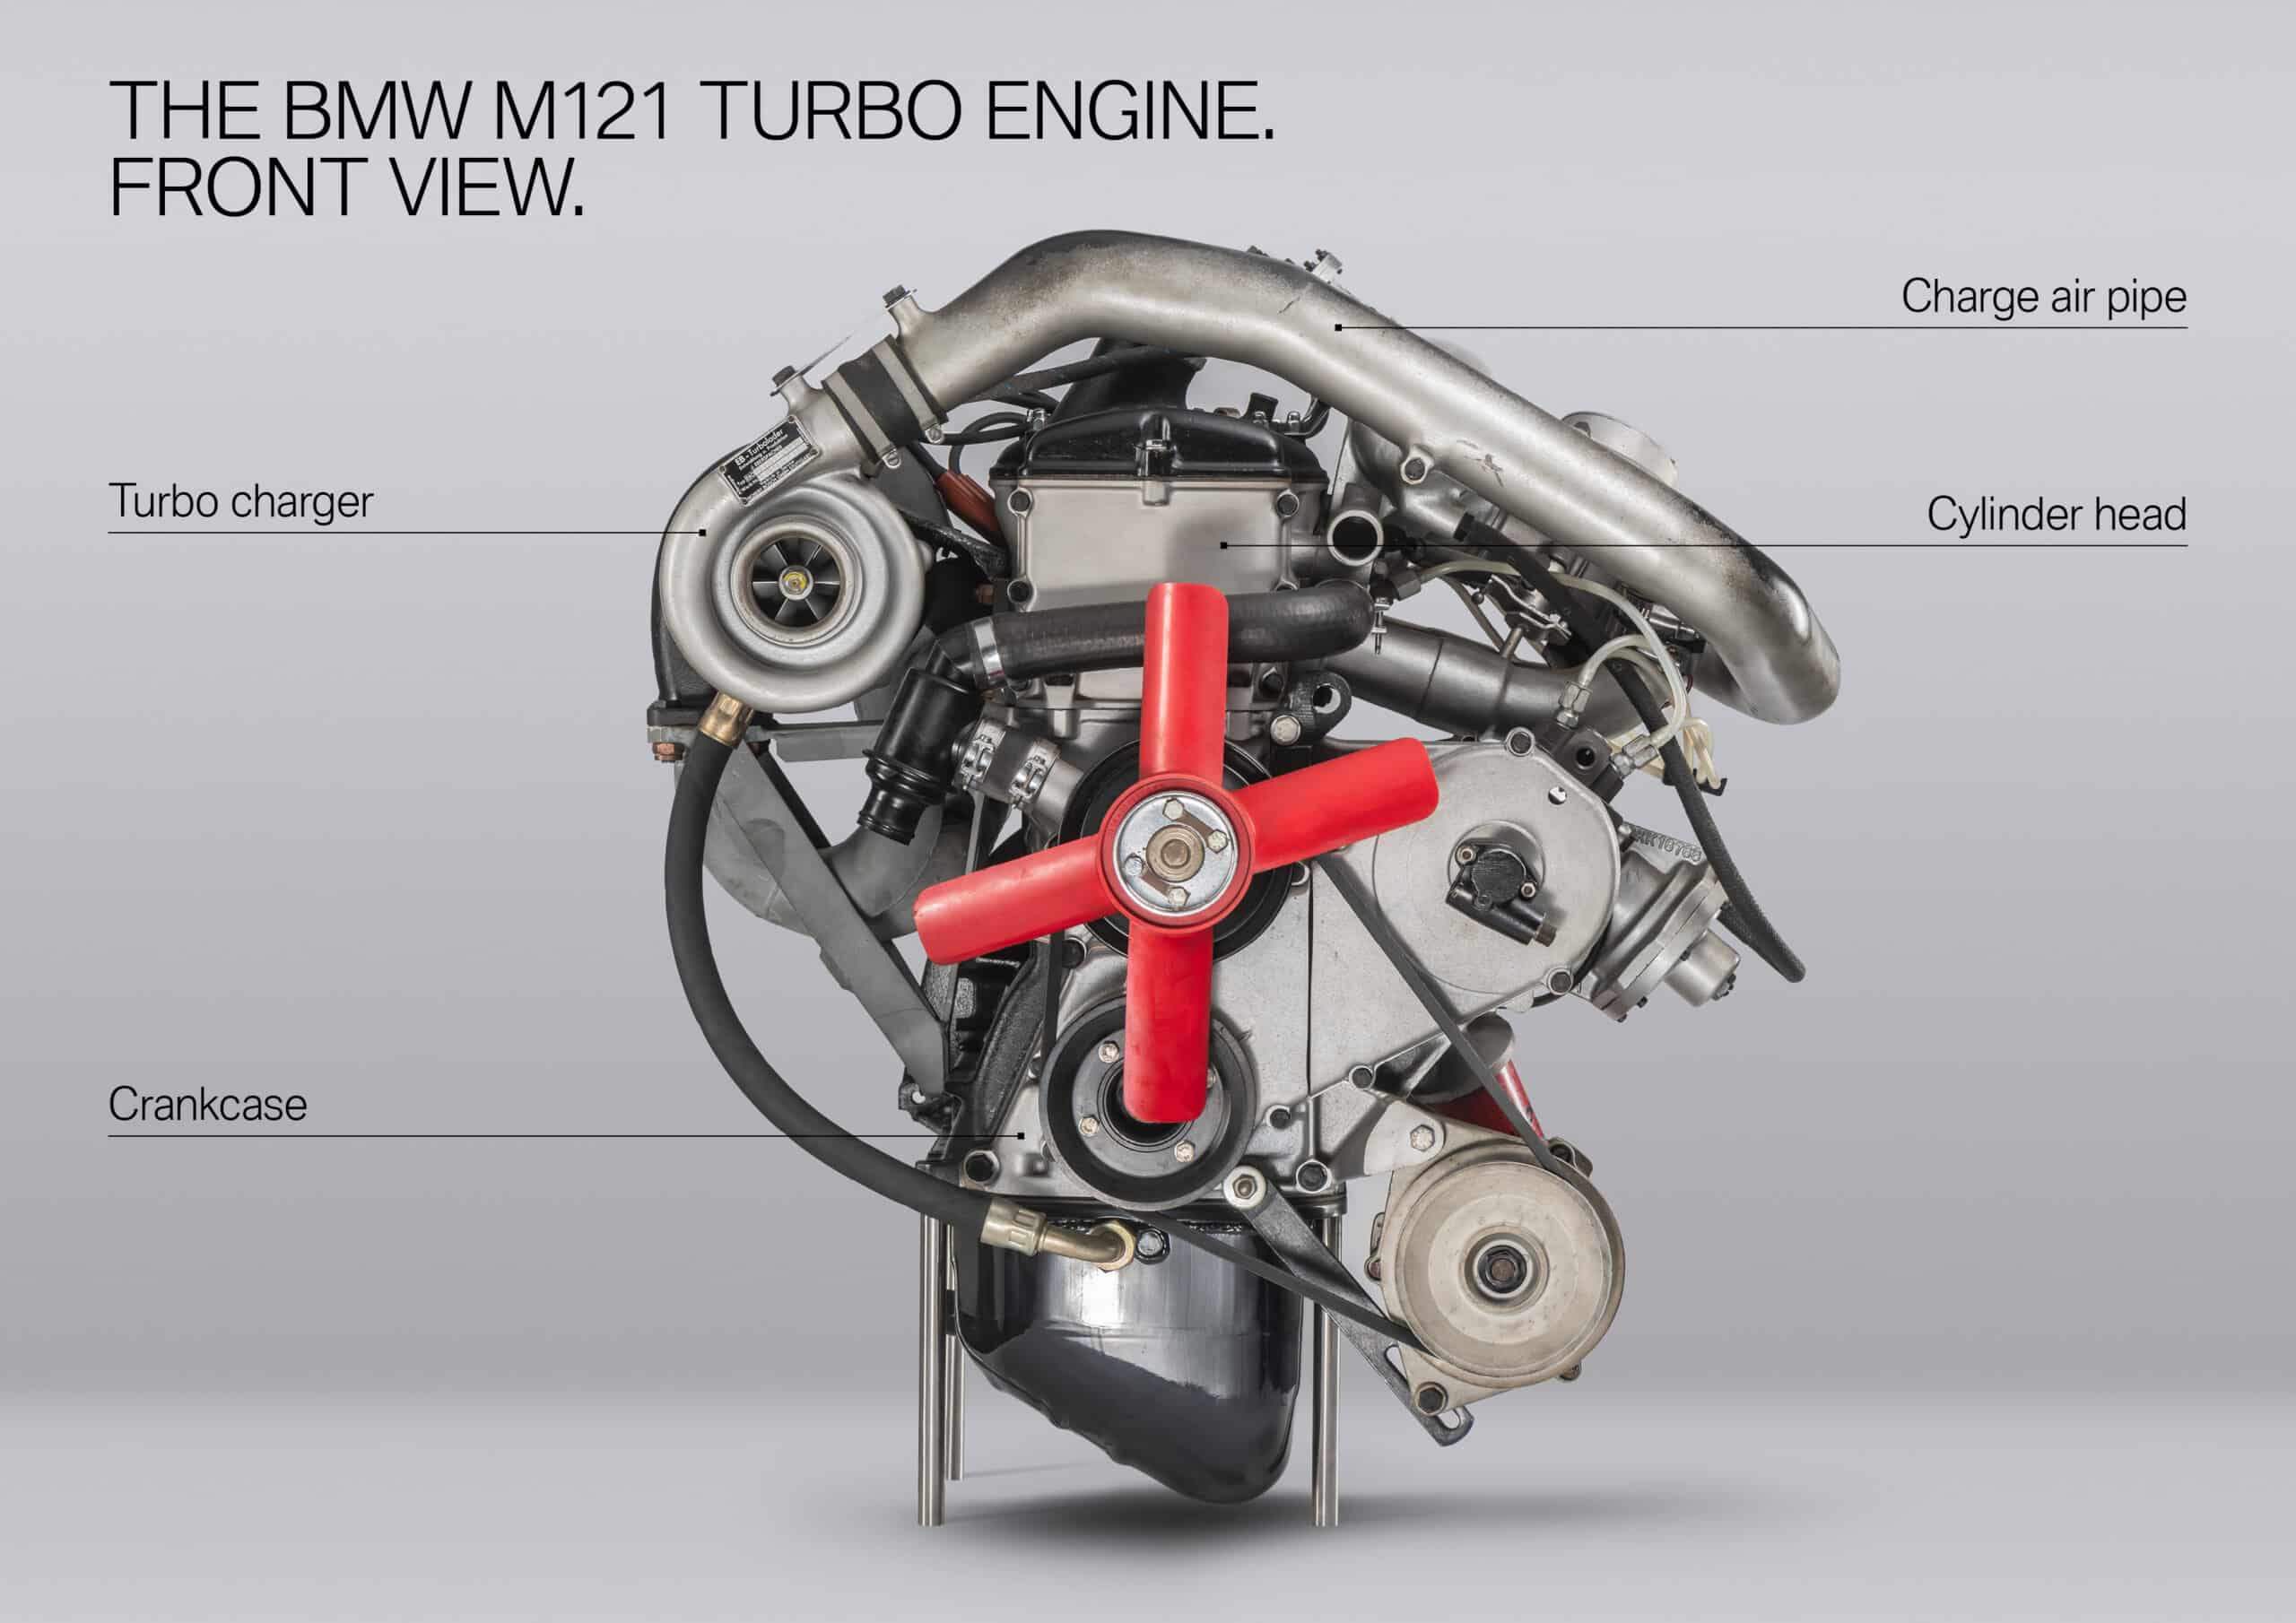 Todos los motores turbo tienen algo de turbo lag